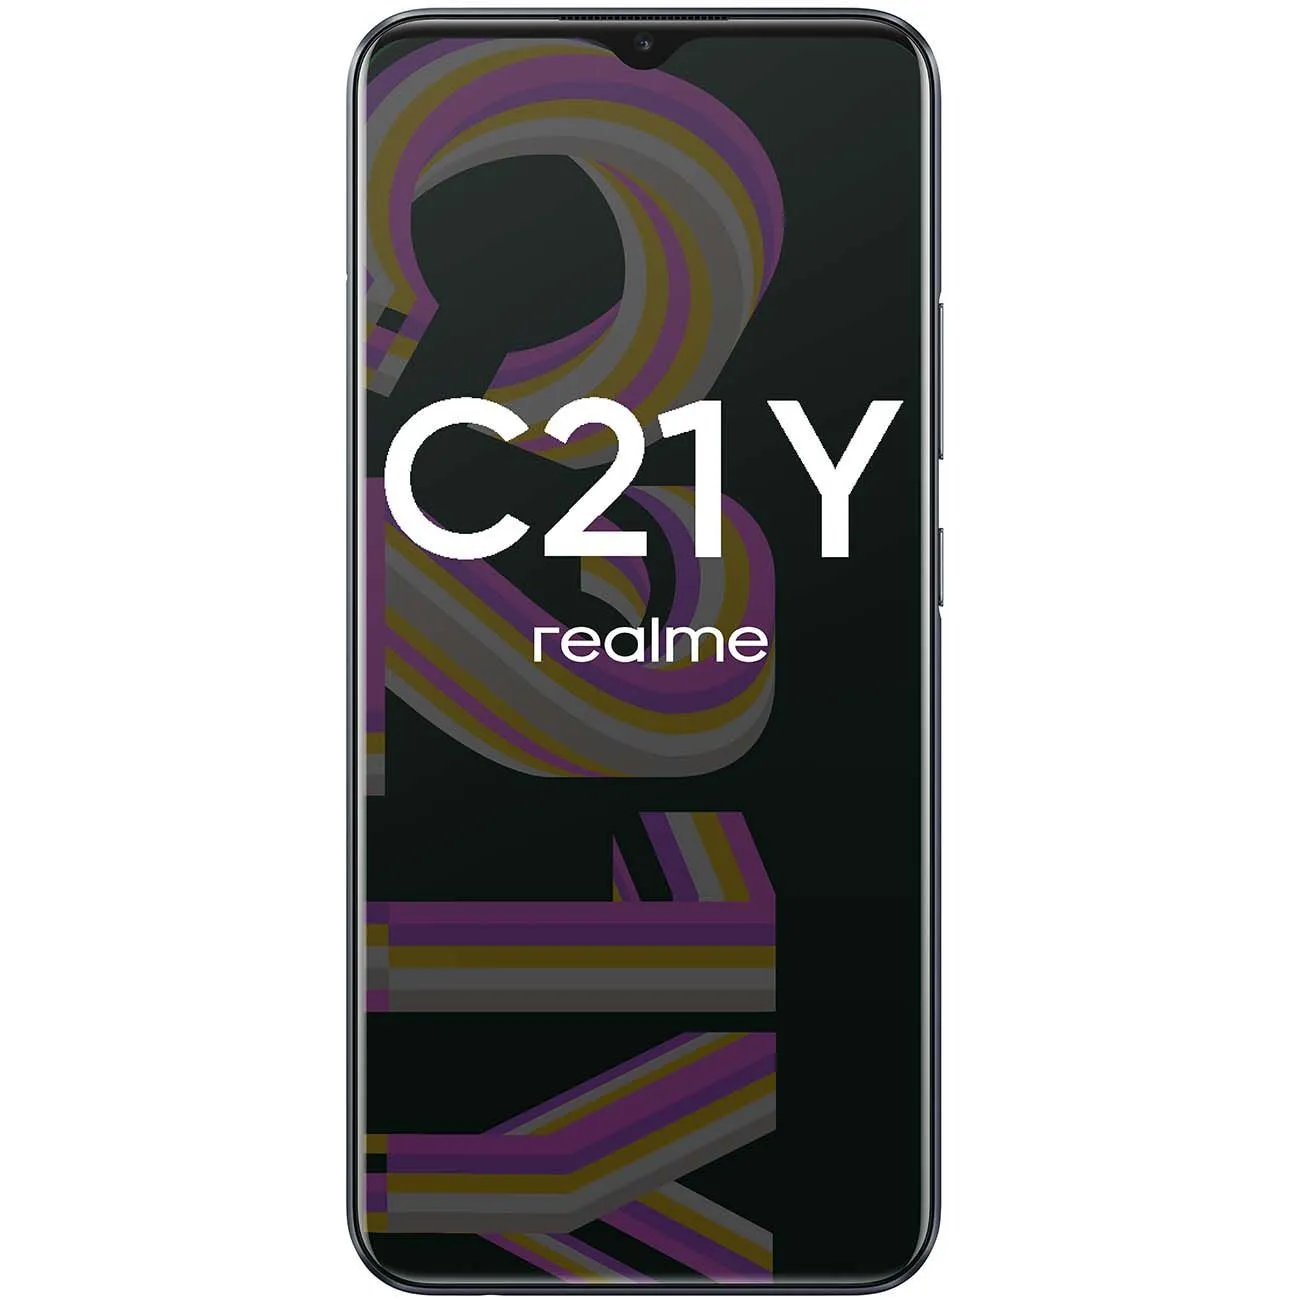 Смартфон Realme C21y 4/64GB, Global, Чёрный + В подарок Беспроводные наушники TWS i12, Белые#2